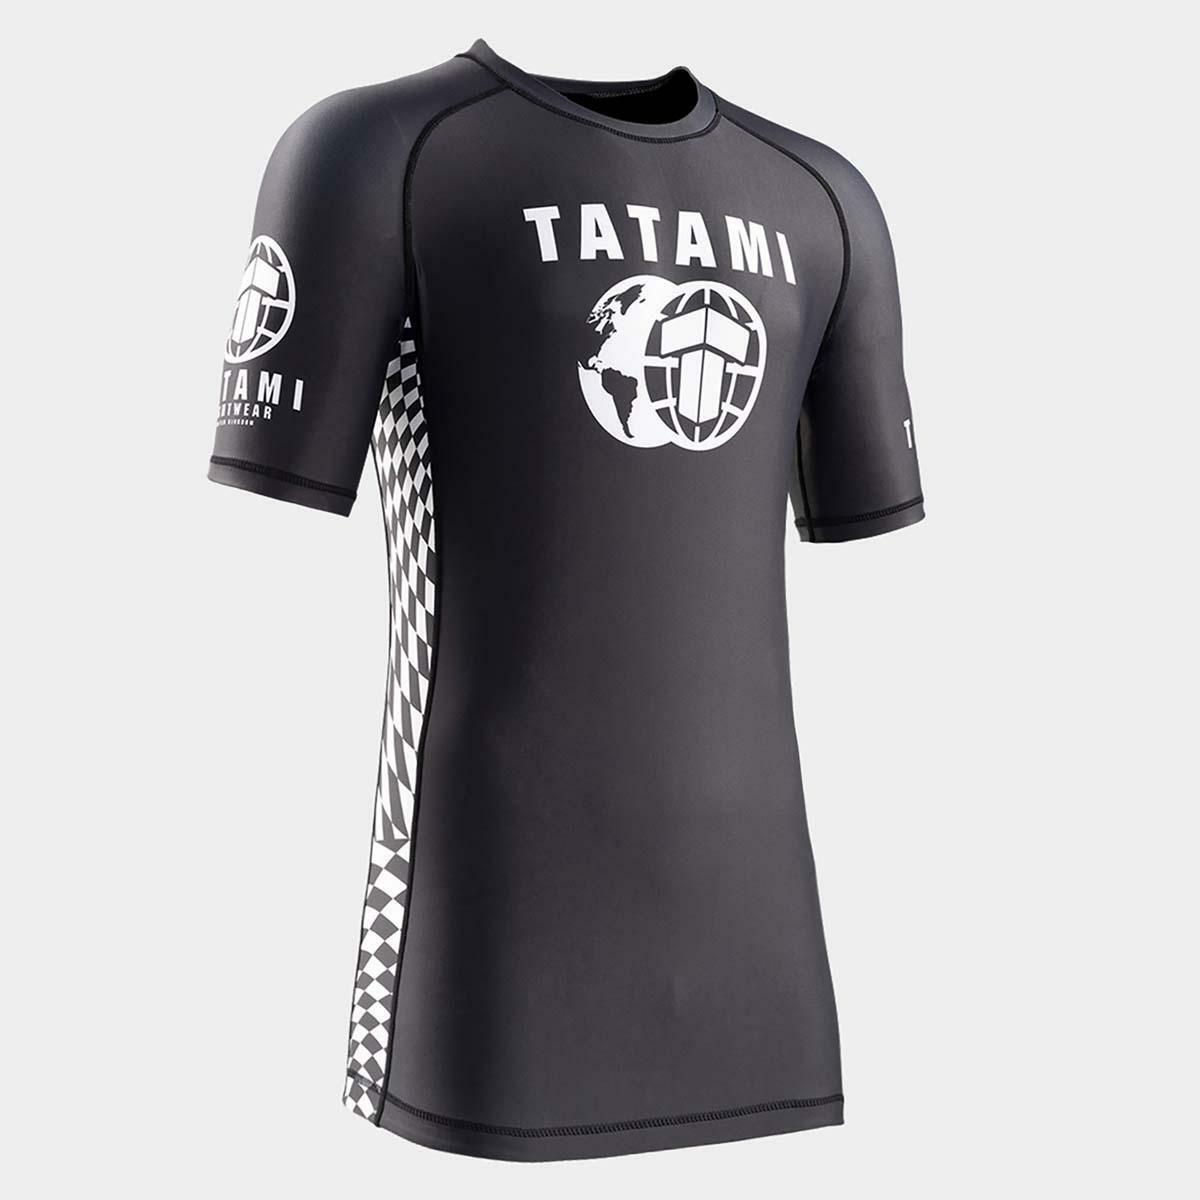 Tatami Raid Short Sleeve Rash Guard TATRG1161BK